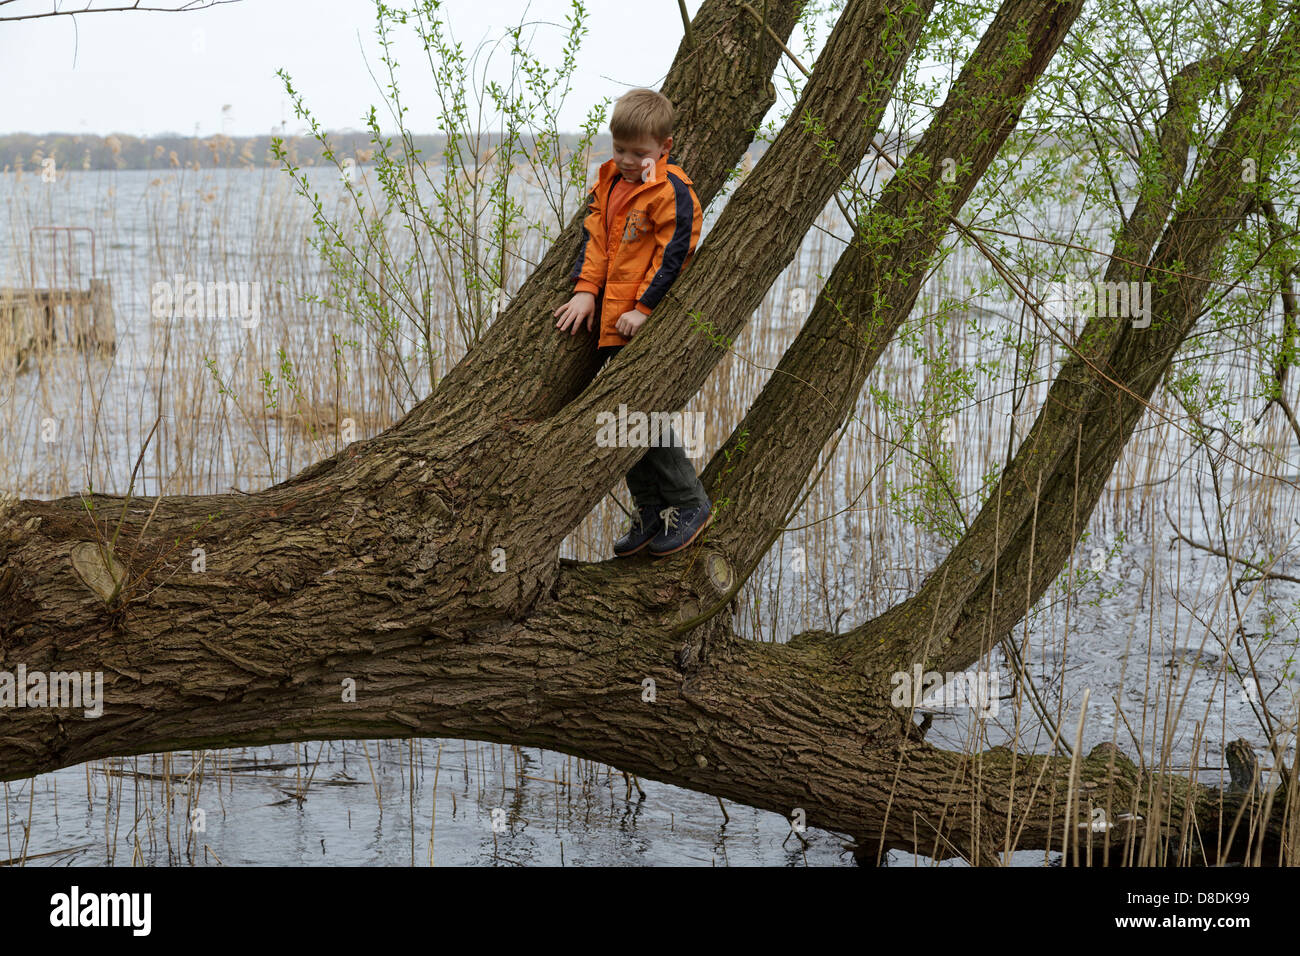 Jeune garçon escalade un arbre qui pousse dans un lac Banque D'Images